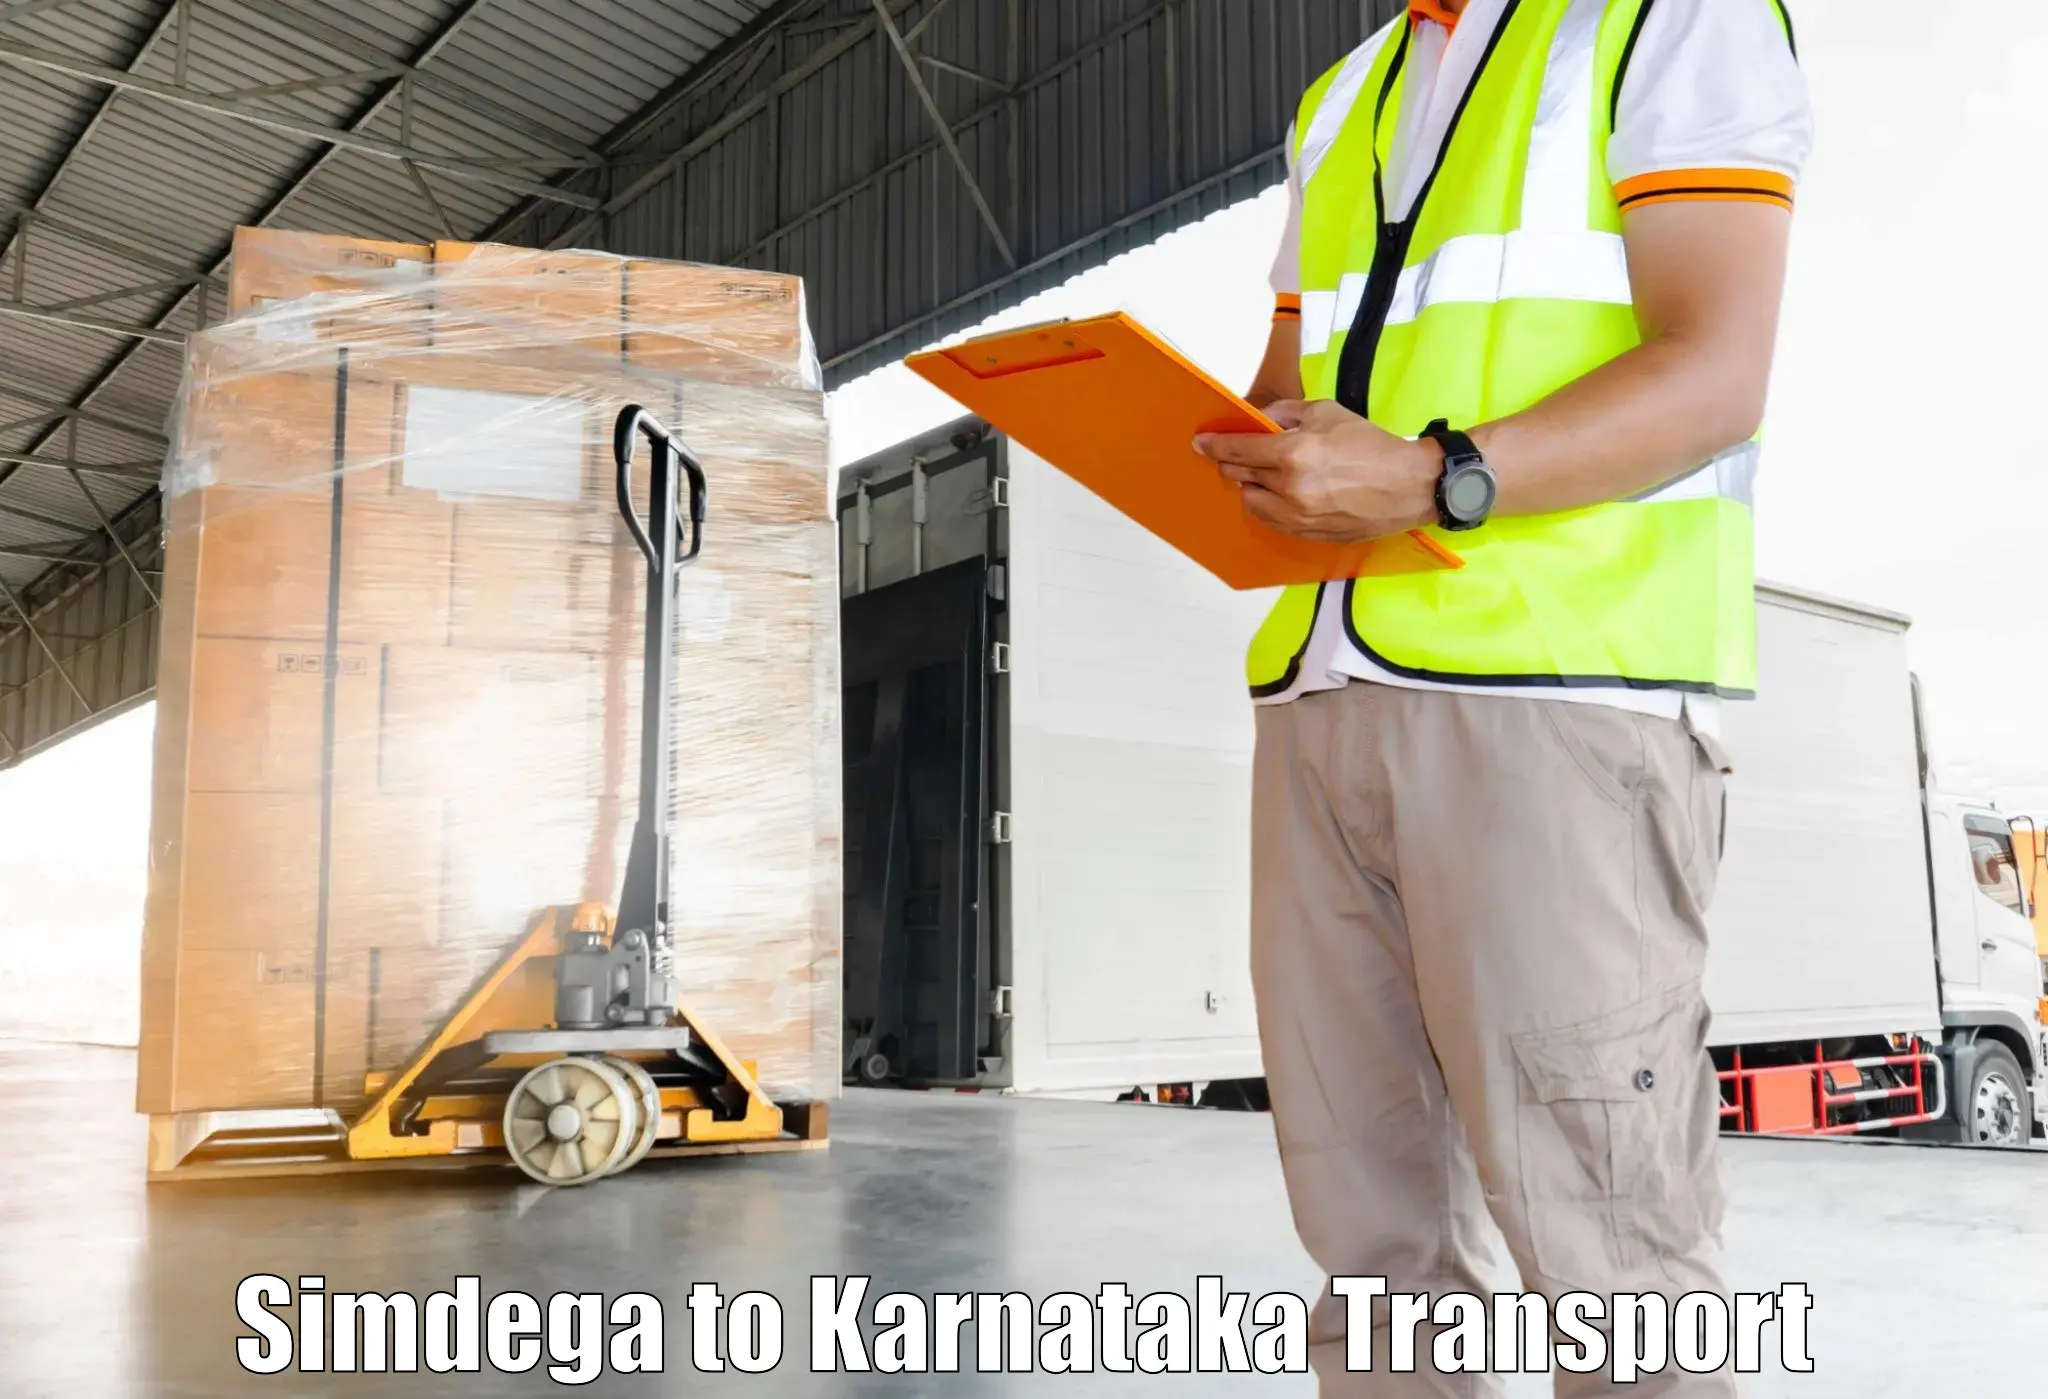 Furniture transport service Simdega to Gadag